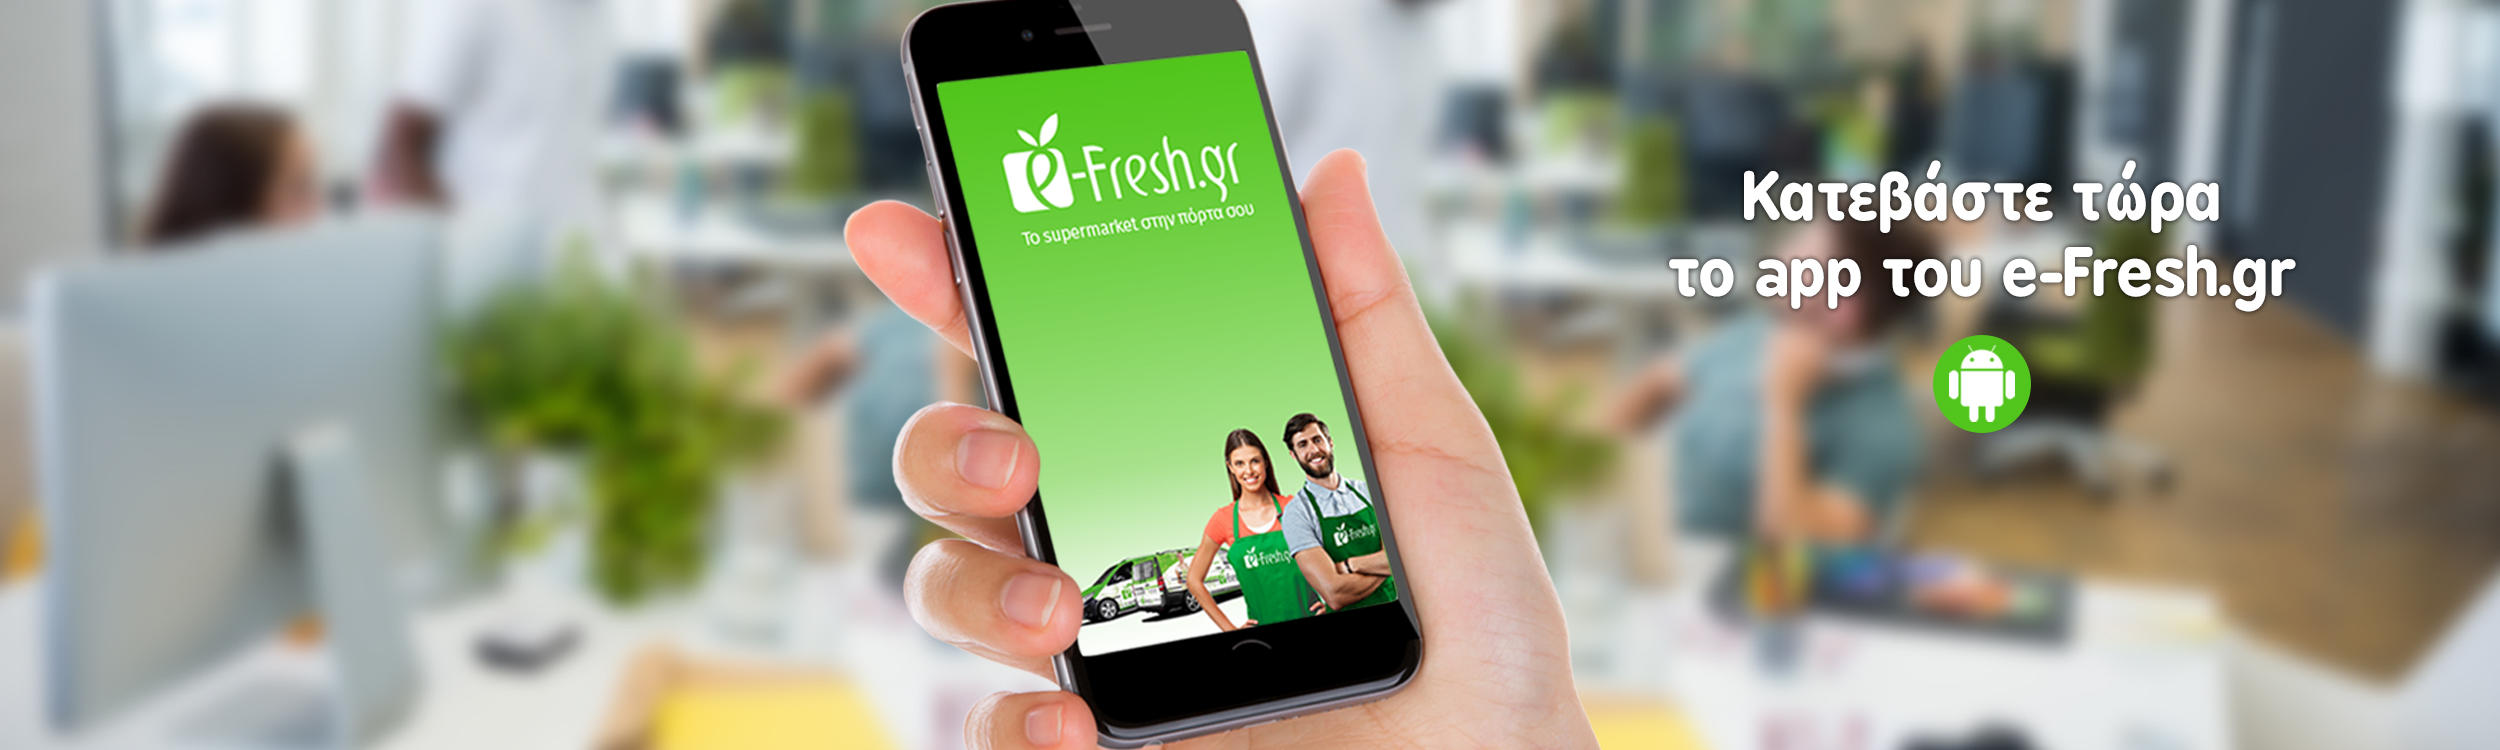 Ήρθε το application του e-Fresh.gr για android για εύκολες αγορές εν κινήσει